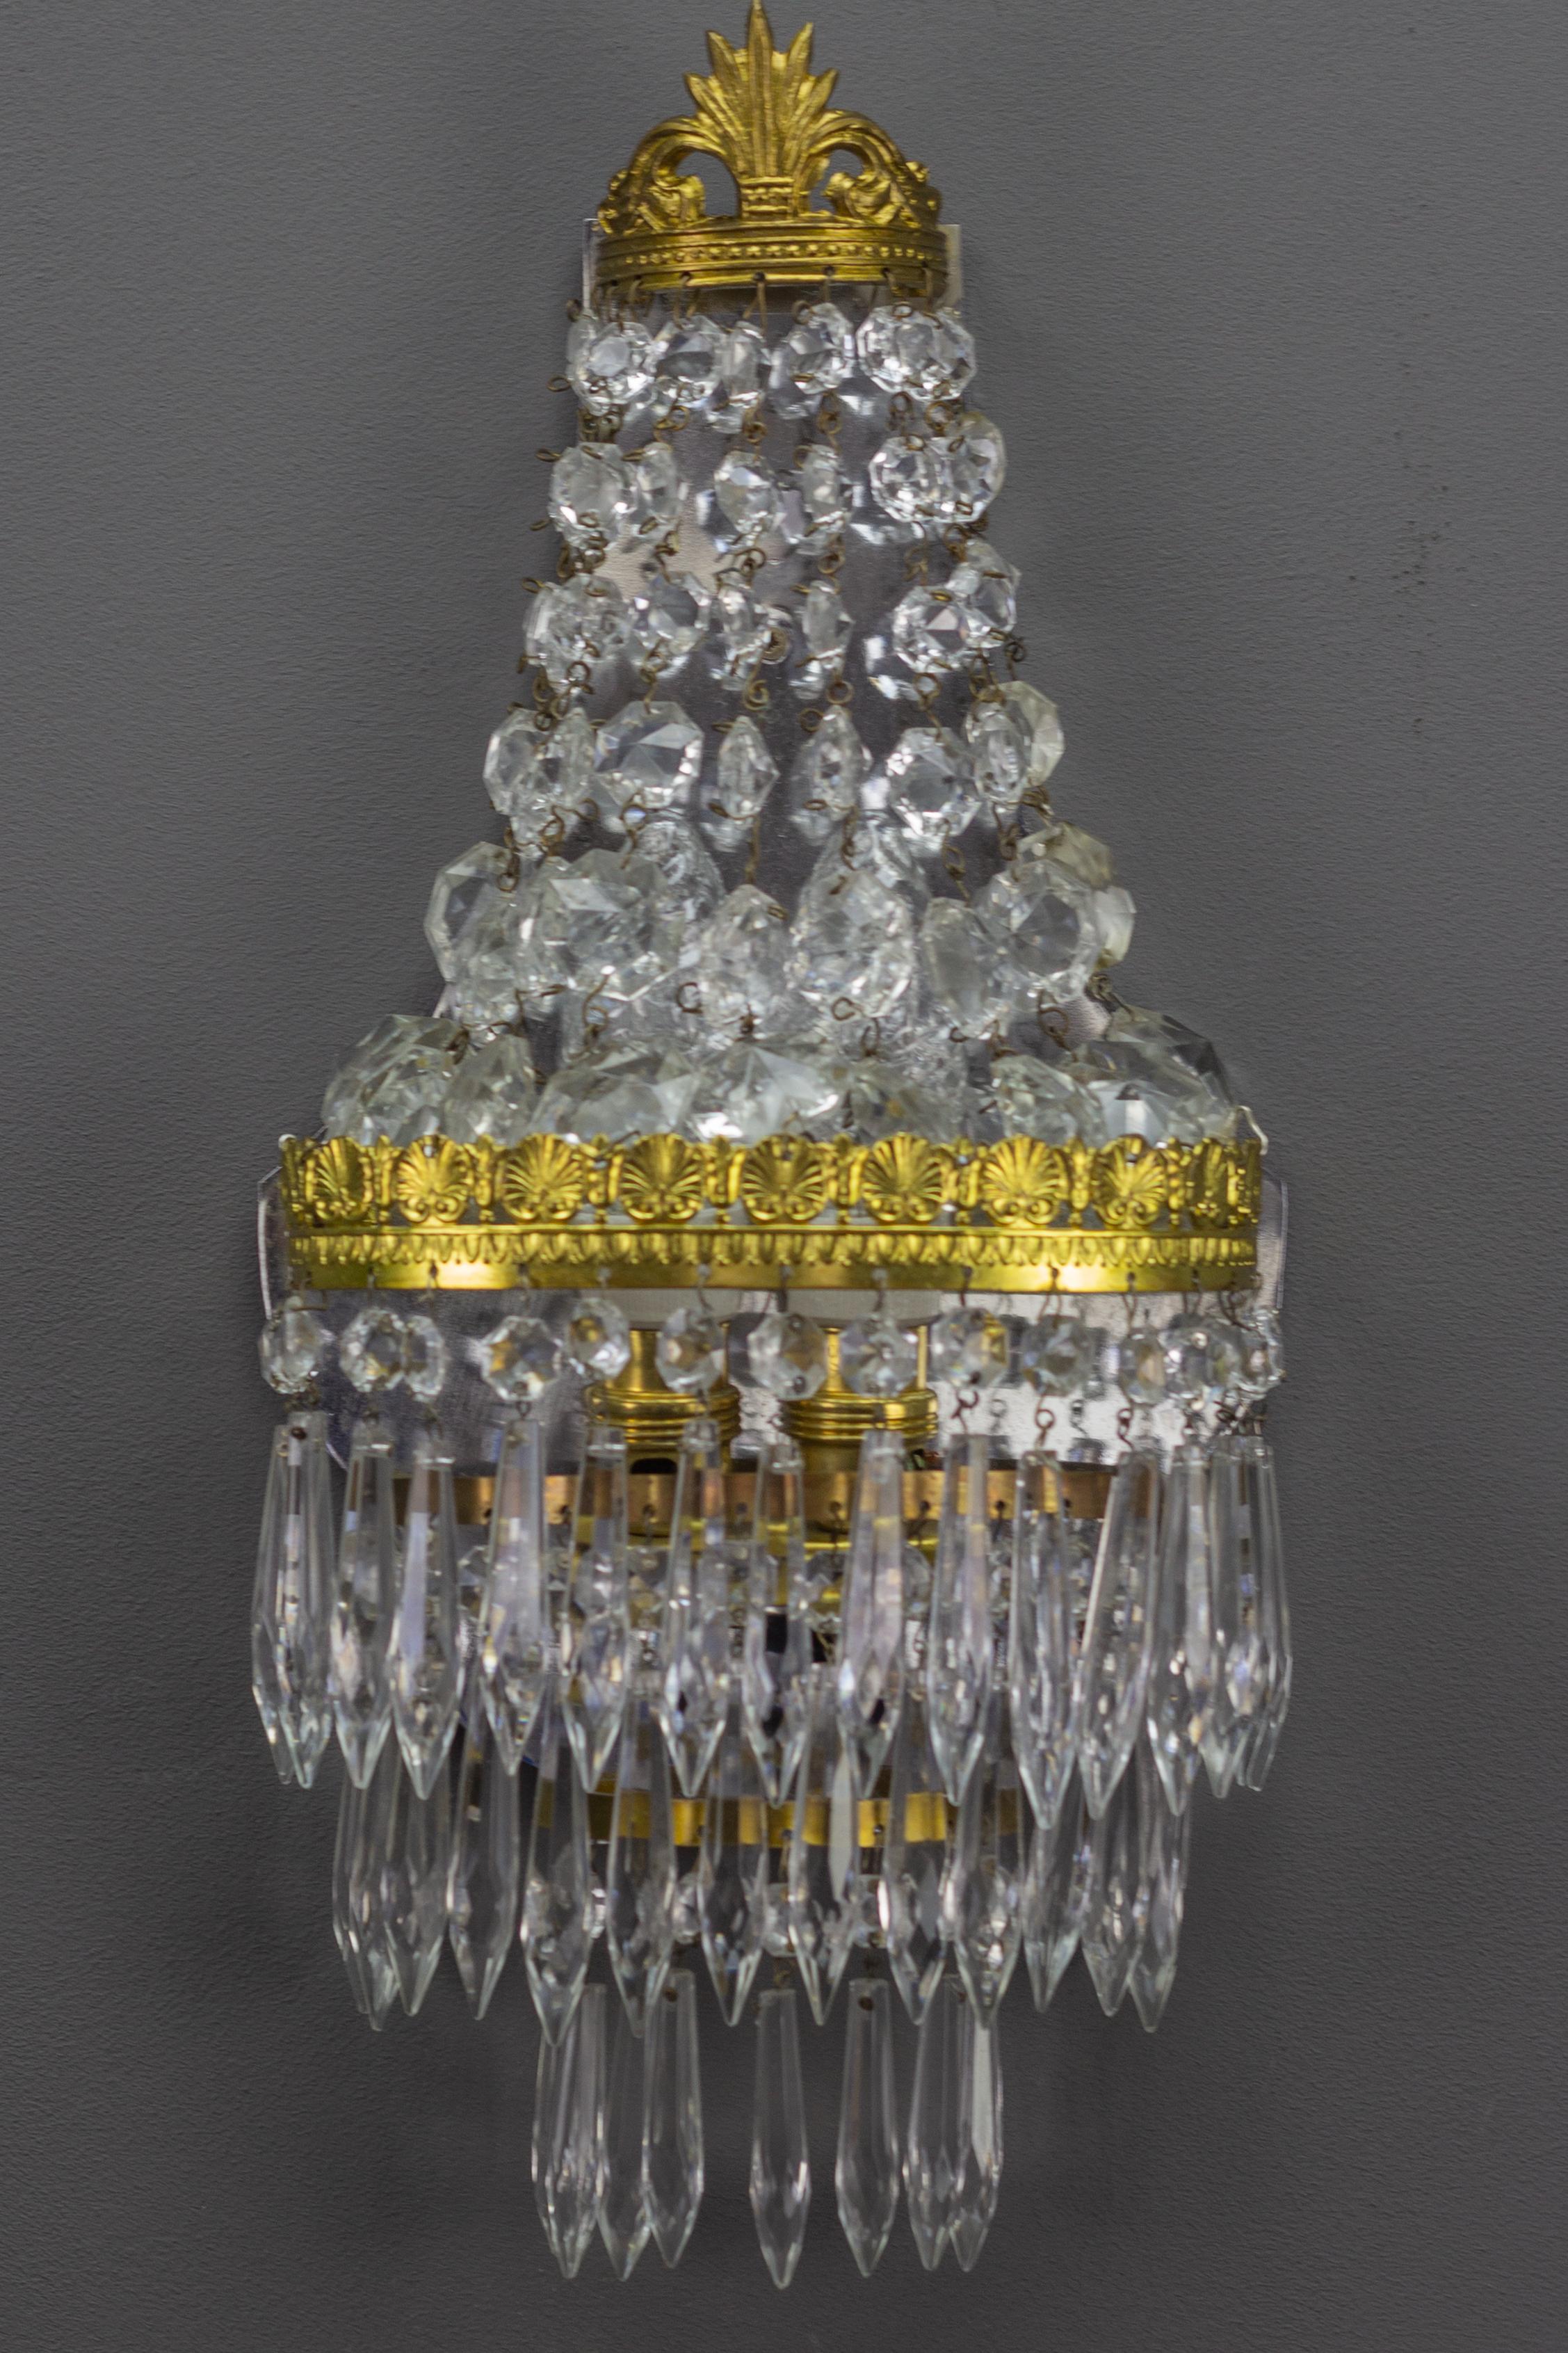 Diese bezaubernde Leuchte im Empire-Stil hat einen Messingrahmen, der auf der oberen Ebene mit Kristallglasperlen und auf der unteren Ebene mit drei Reihen von Kristallglasanhängern versehen ist.
Zwei Innenleuchten mit Fassungen für Glühbirnen der